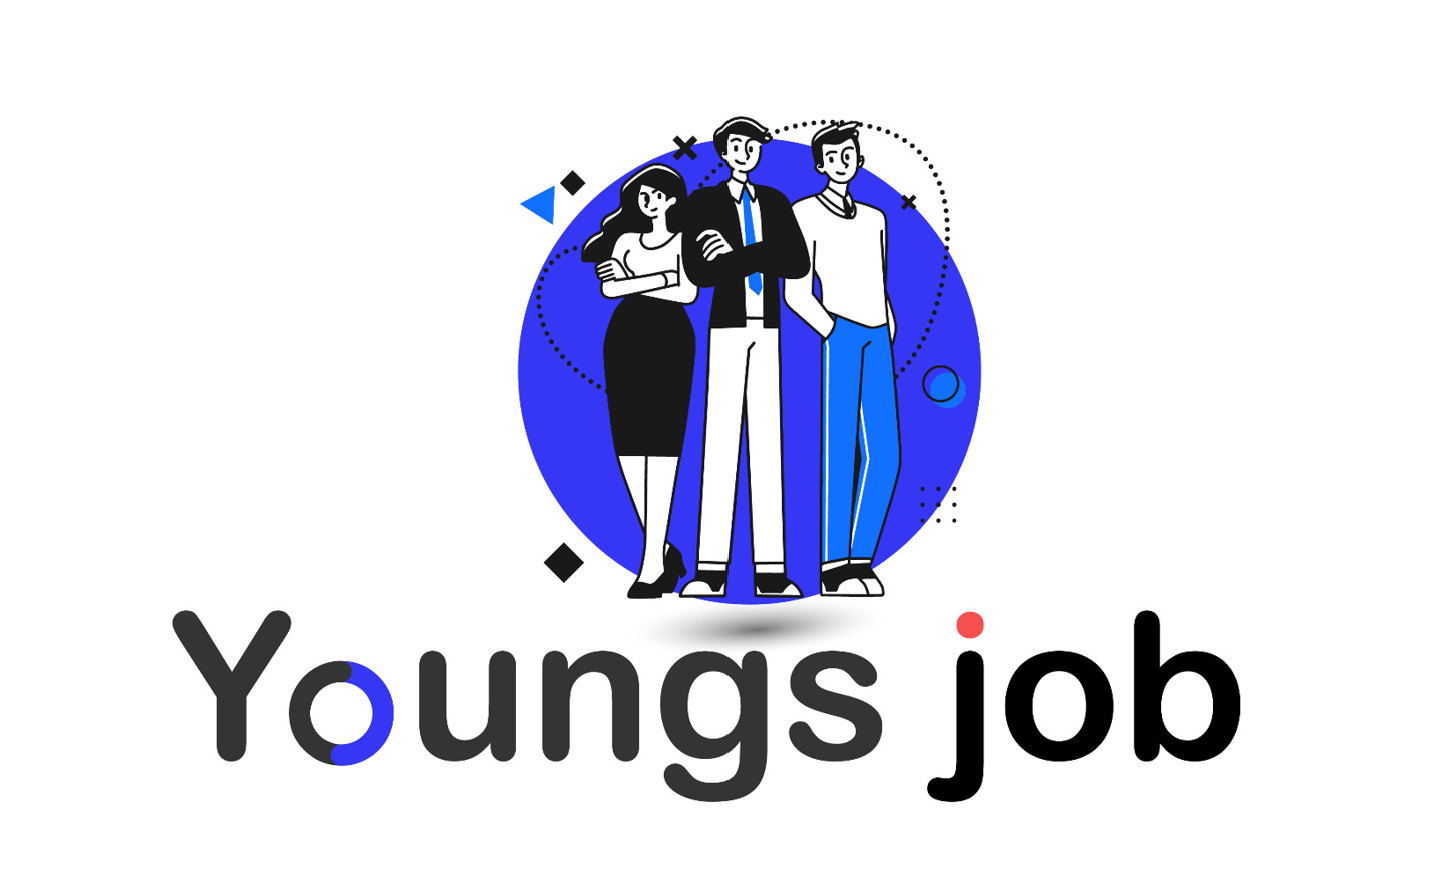 Actualité – Youngs job : un site d'emplois dédié aux 16-18 ans